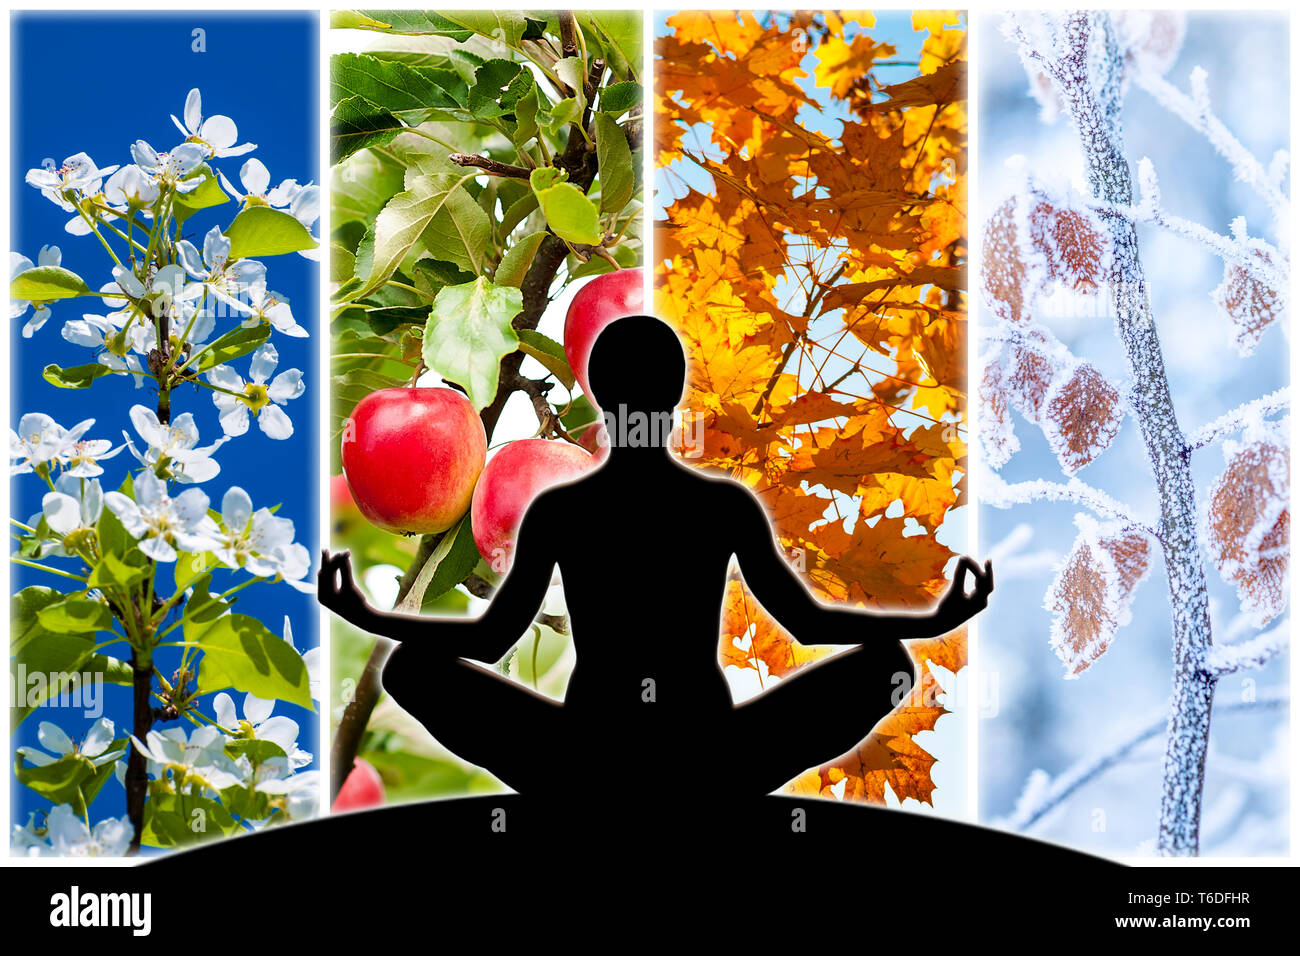 Weibliche yoga Abbildung Silhouette gegen Collage aus vier Bilder für jede Jahreszeit: Frühling, Sommer, Herbst und Winter. Stockfoto